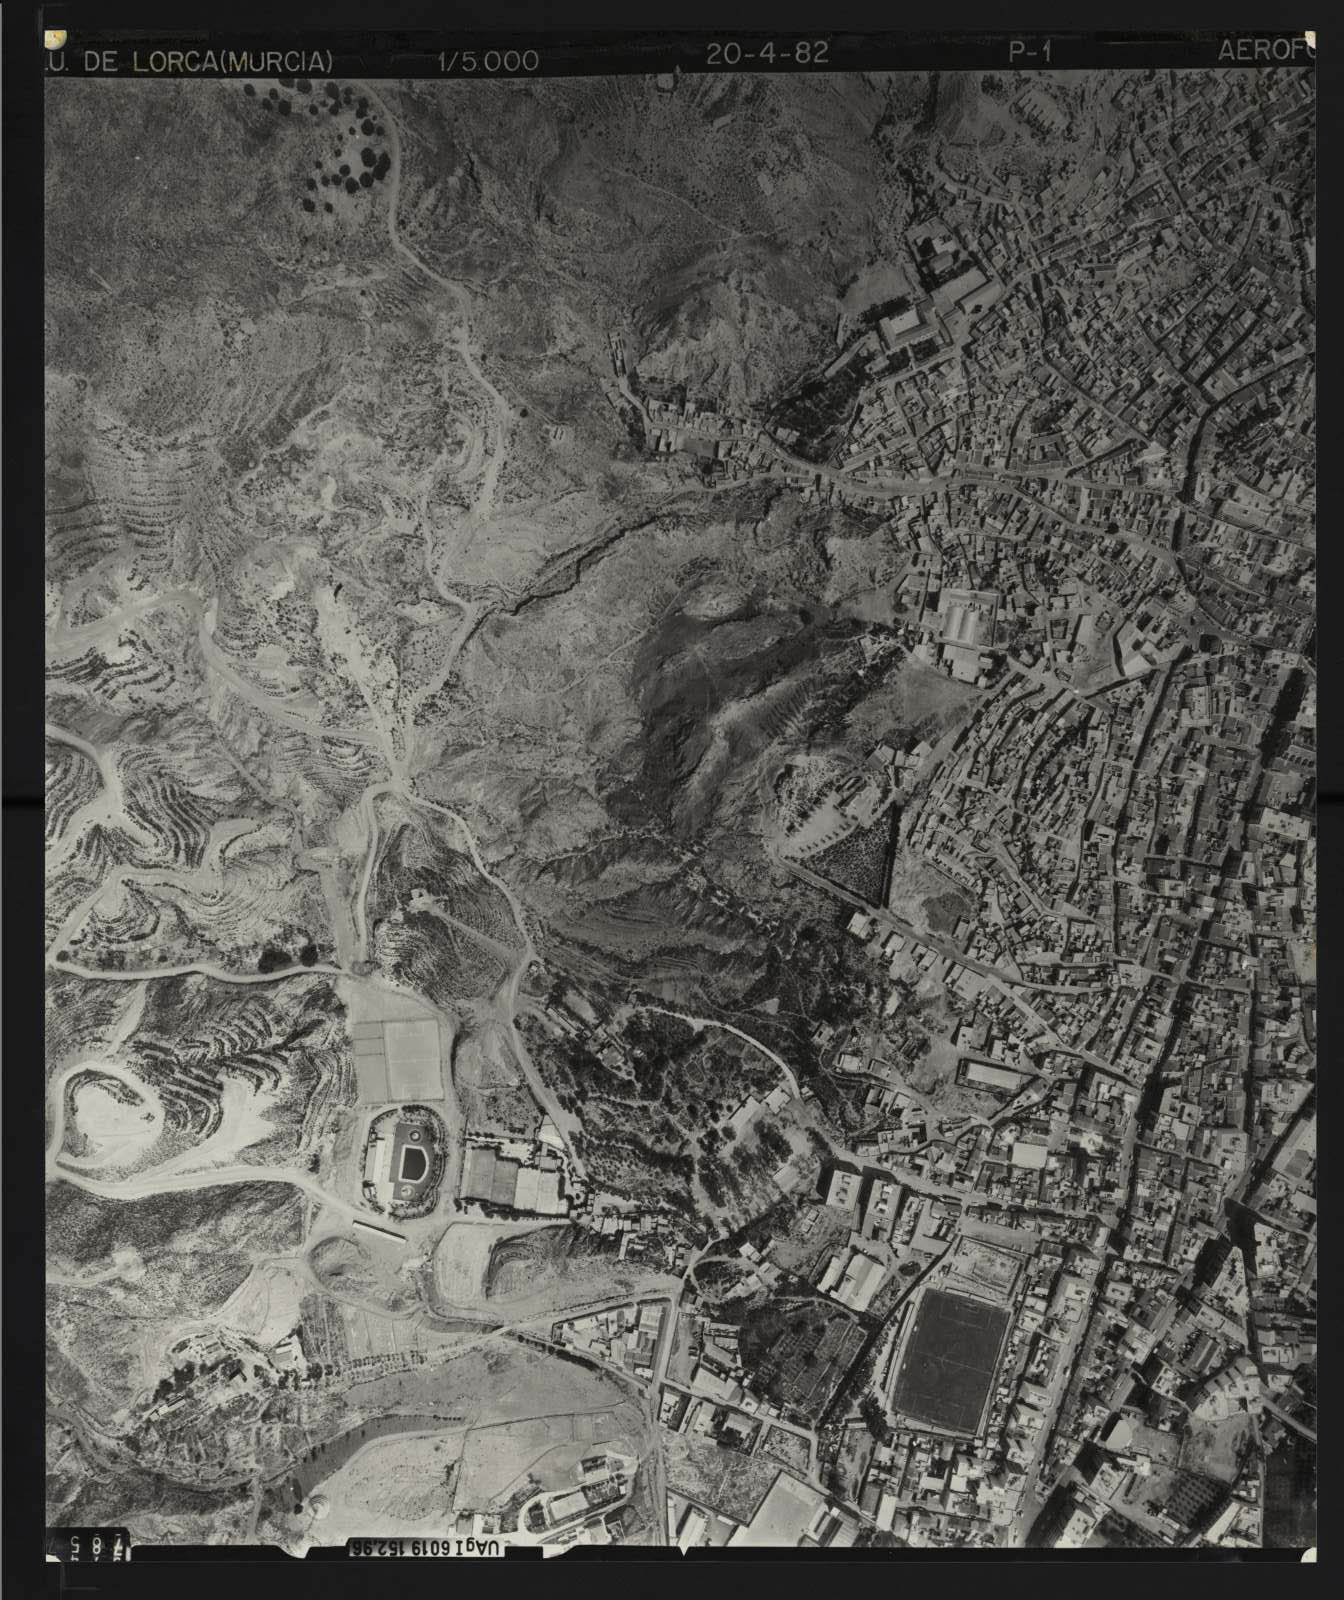 Fotografía aérea del casco urbano de Lorca